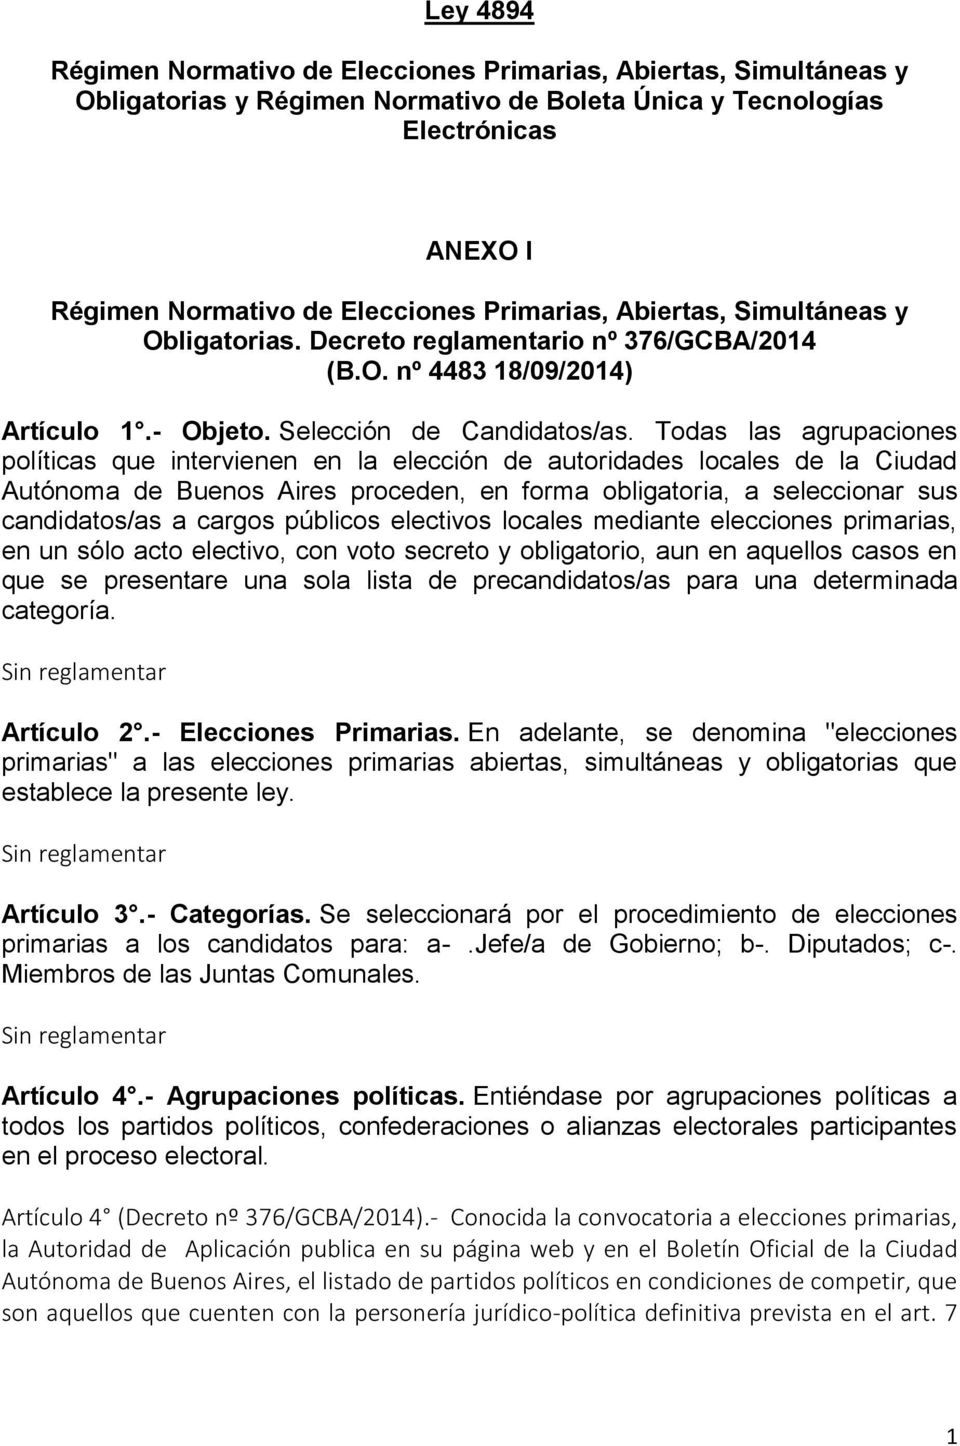 Todas las agrupaciones políticas que intervienen en la elección de autoridades locales de la Ciudad Autónoma de Buenos Aires proceden, en forma obligatoria, a seleccionar sus candidatos/as a cargos